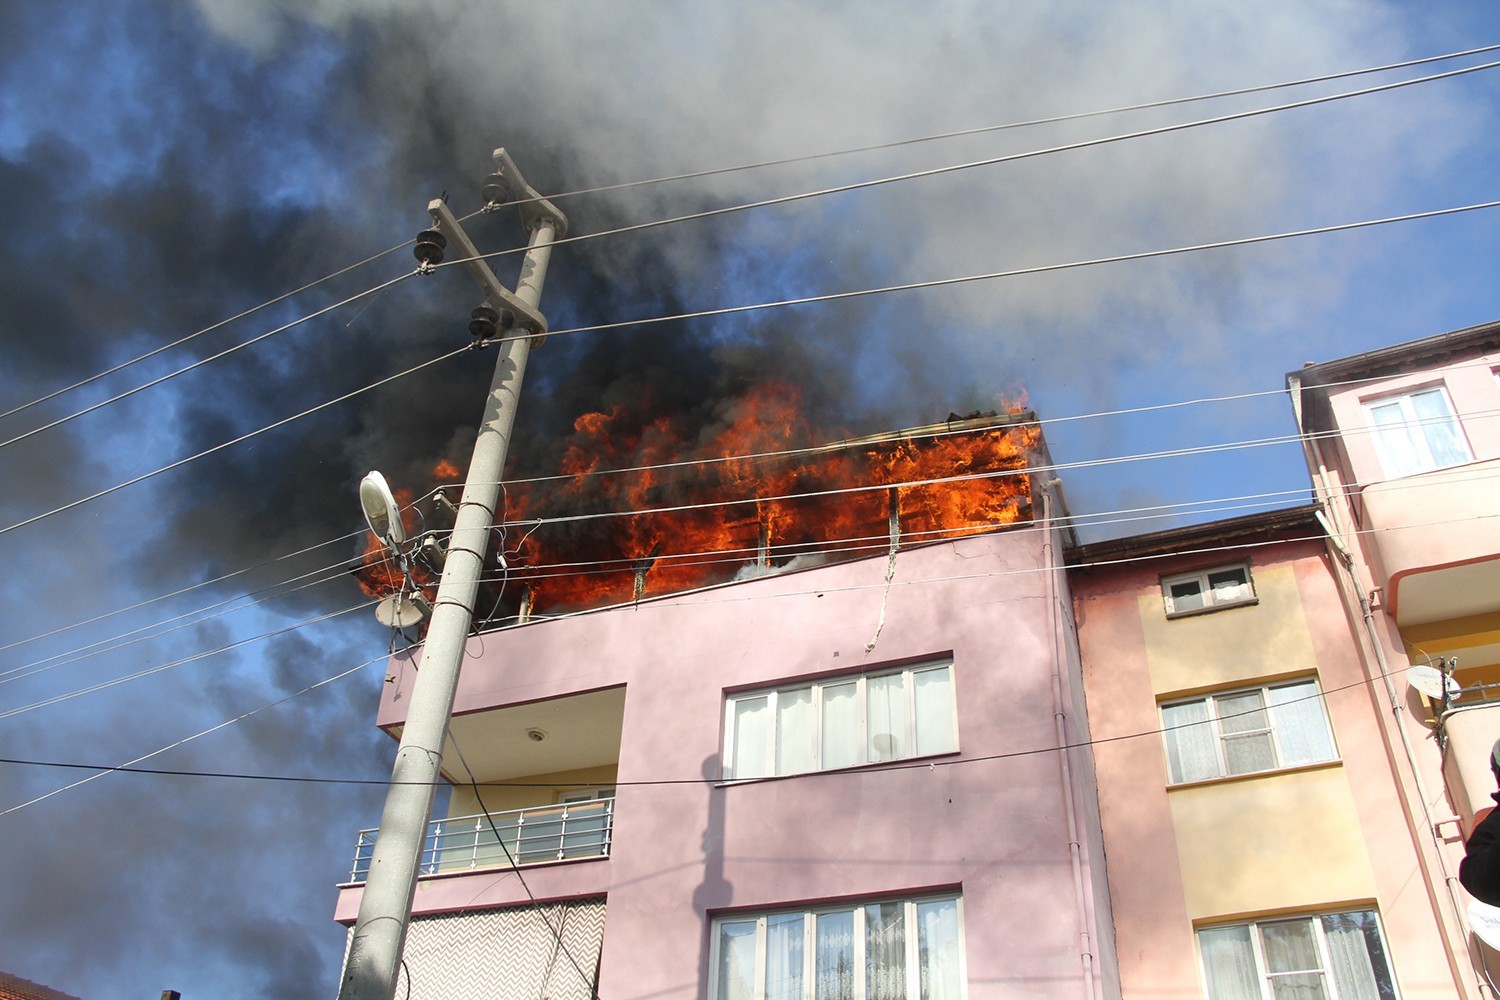 Manisa’da görev yapan uzman çavuş, ev yangınında hayatını kaybetti #manisa